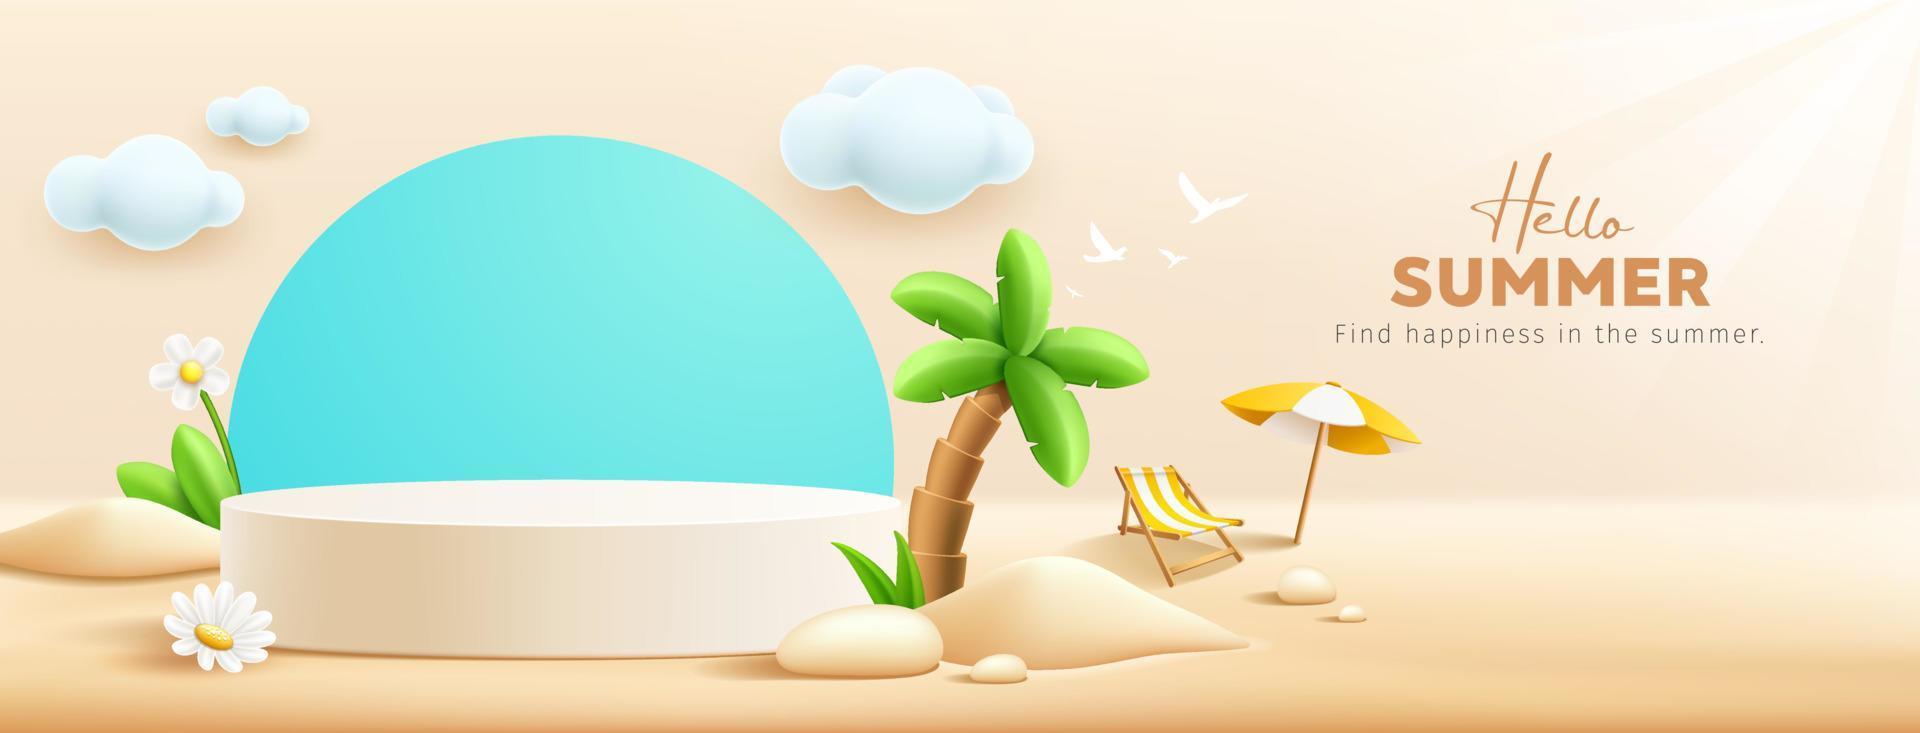 verano podio mostrar, pila de arena, flores, Coco árbol, playa paraguas, playa silla, bandera diseño, en nube y arena playa fondo, eps 10 vector ilustración